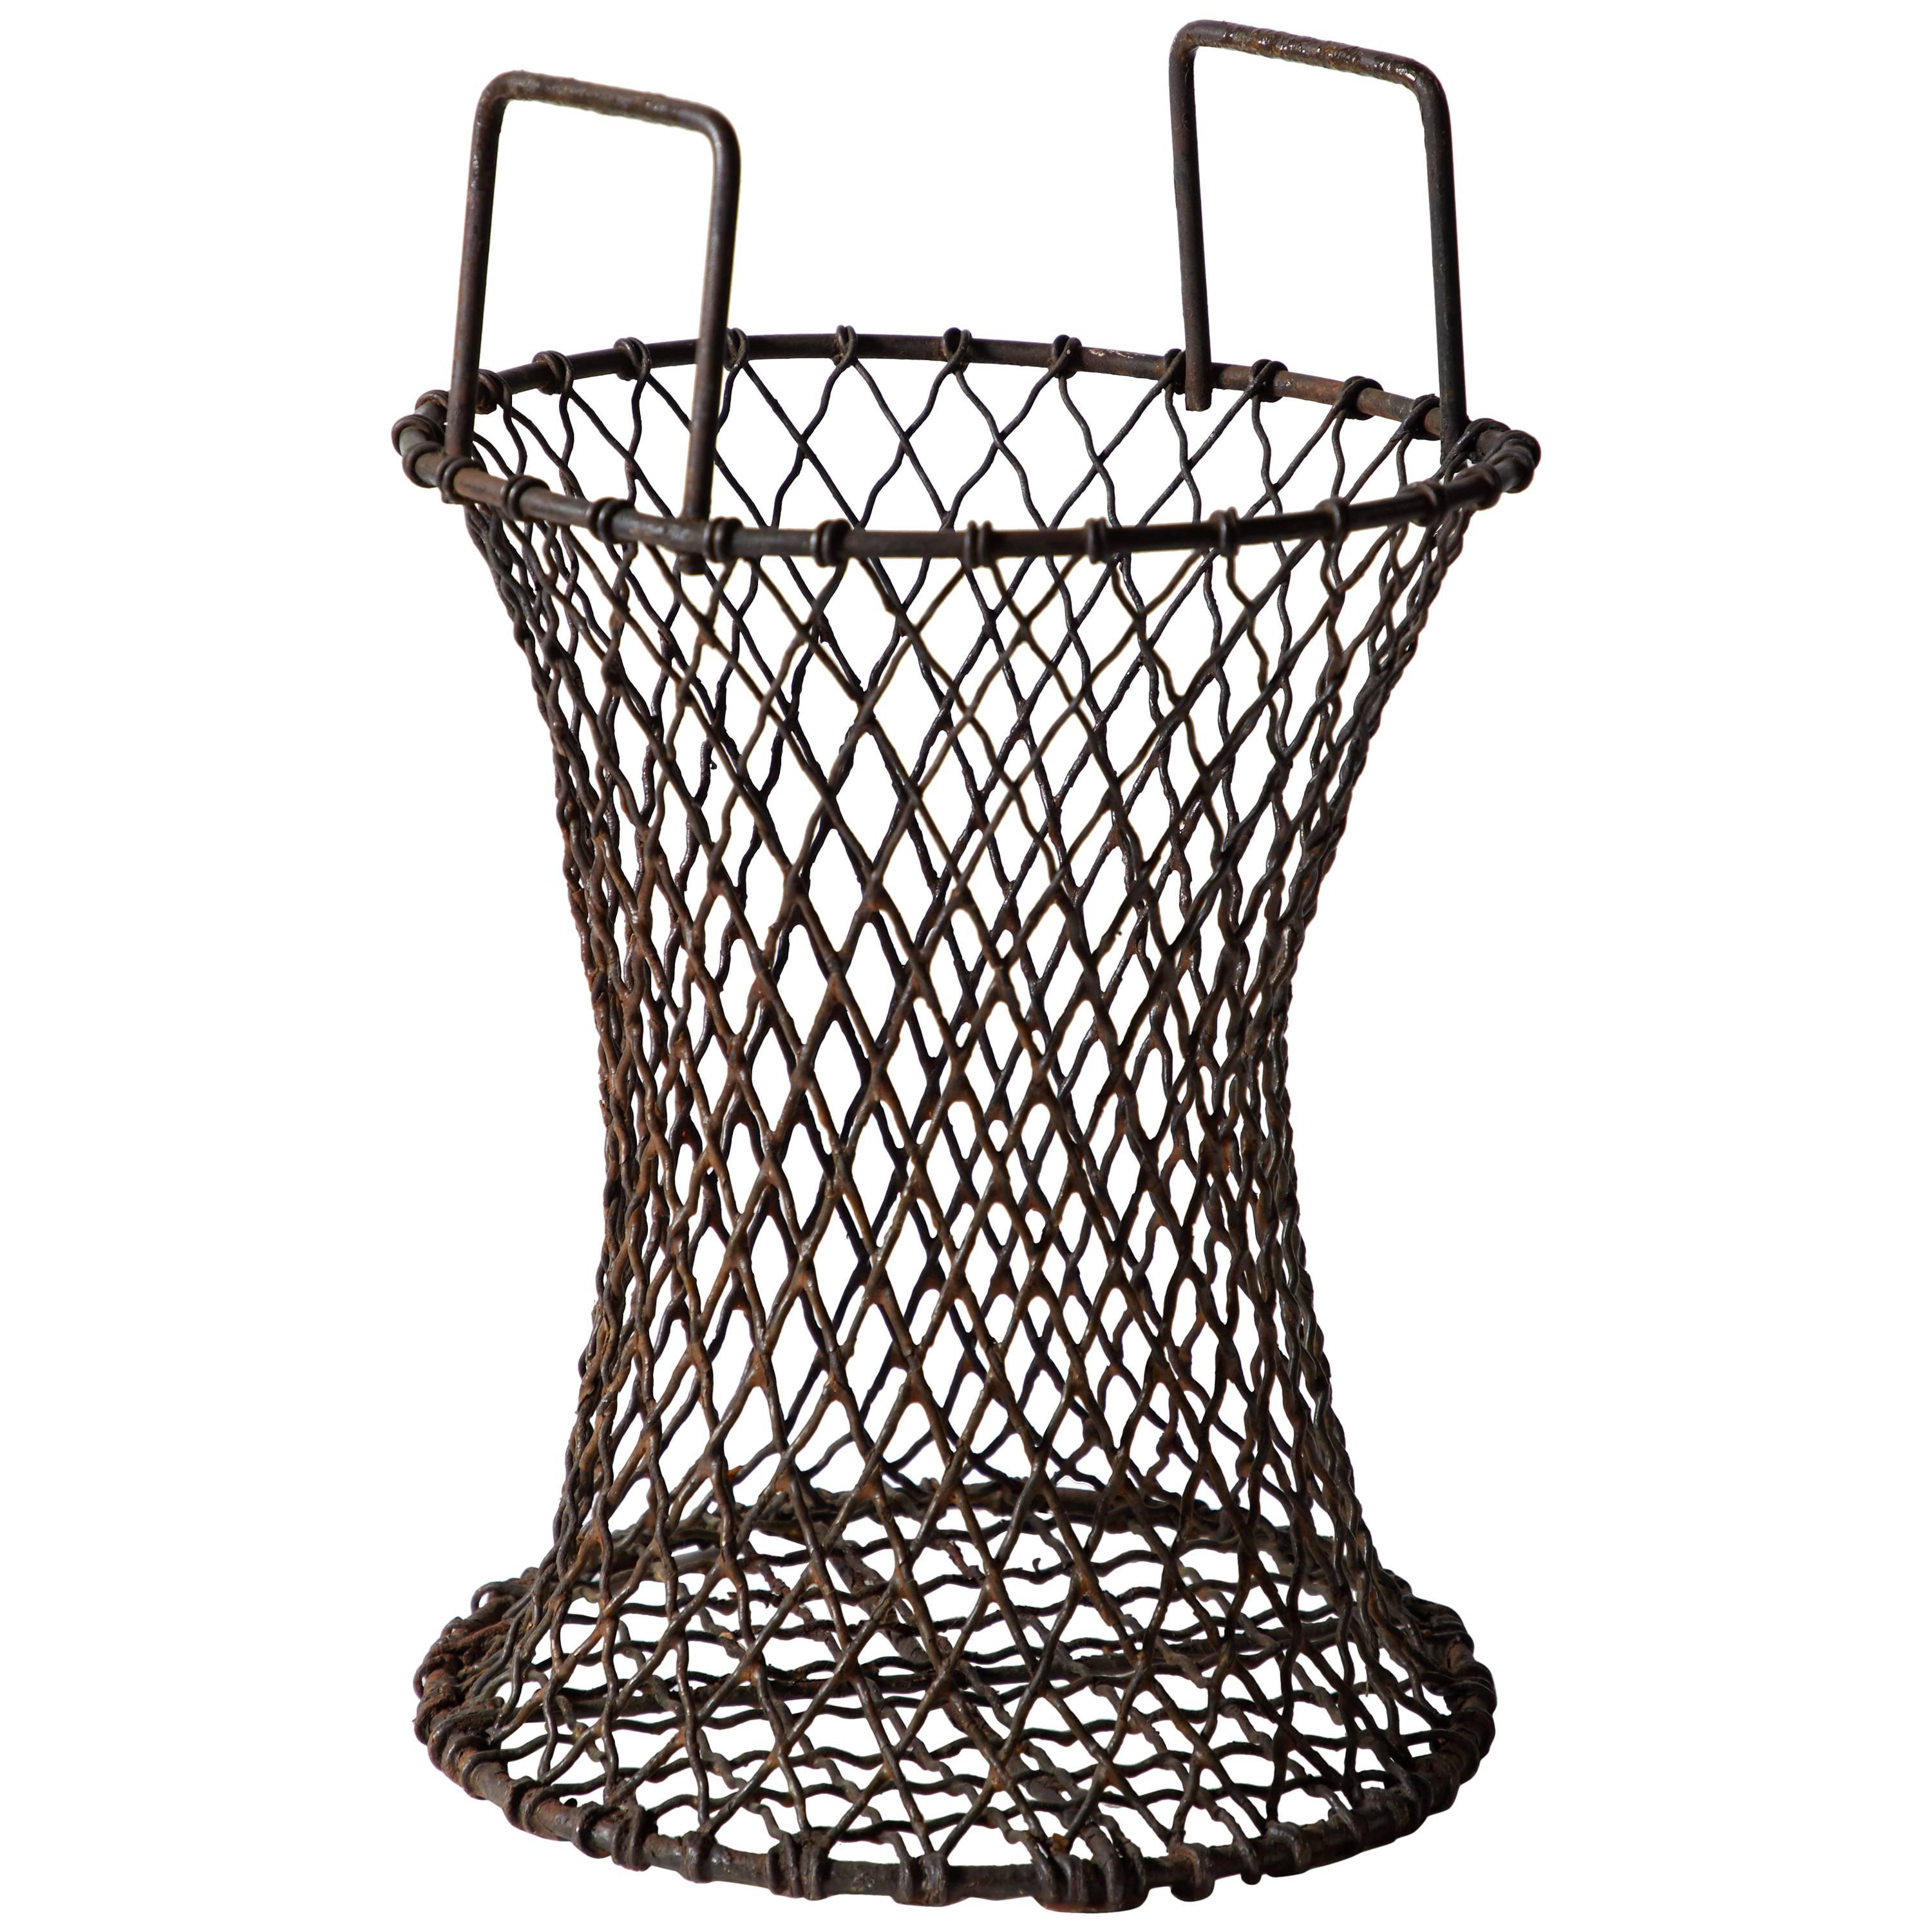 Sculptural Iron Waste Basket